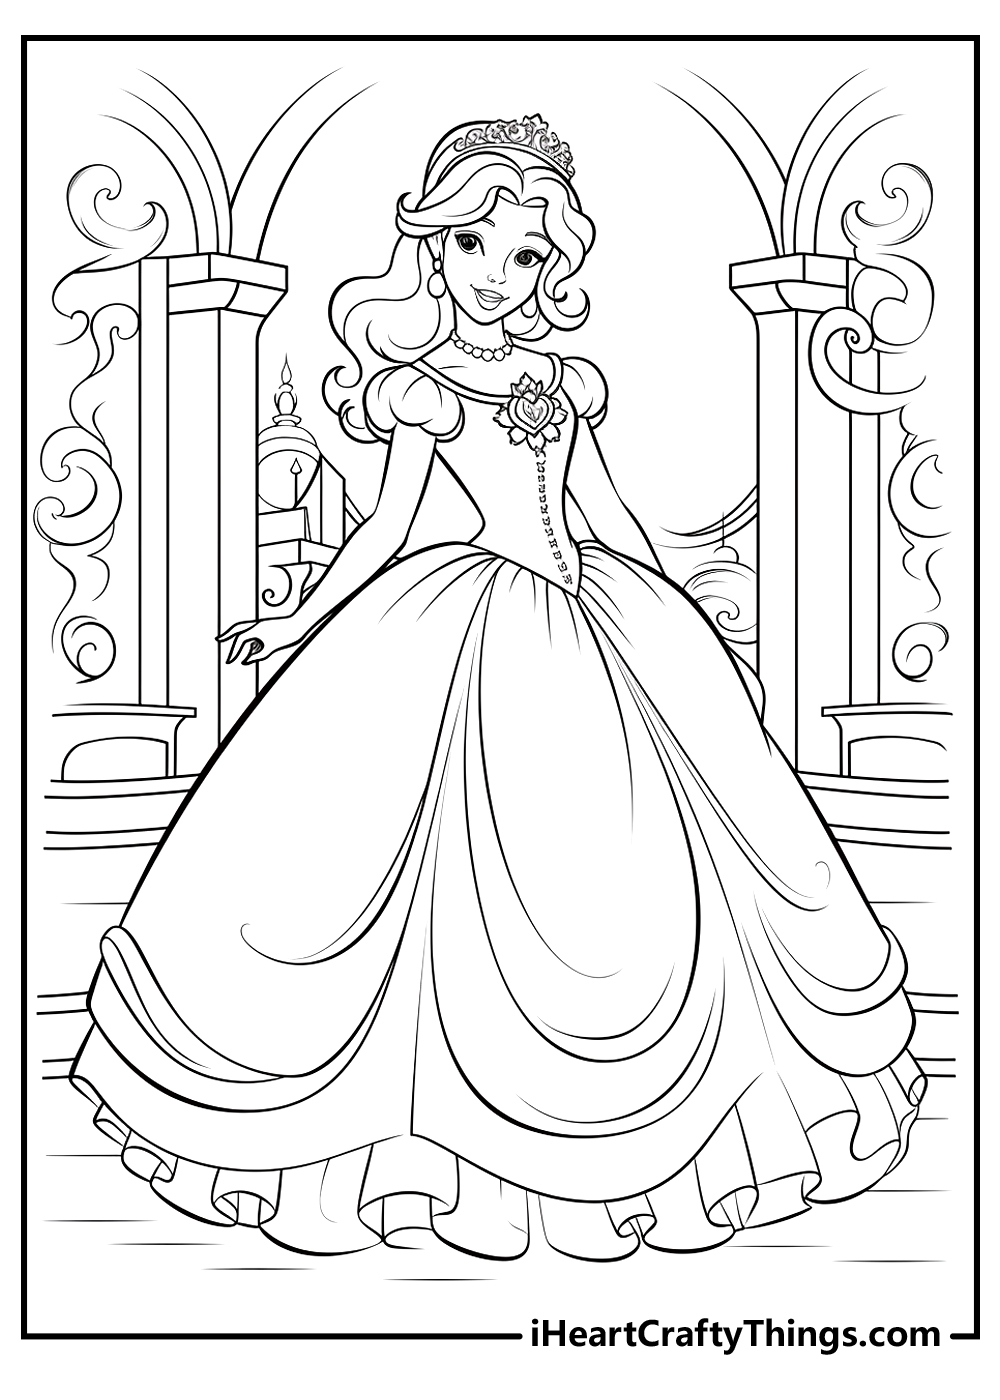 Cinderella coloring sheet free pdf download